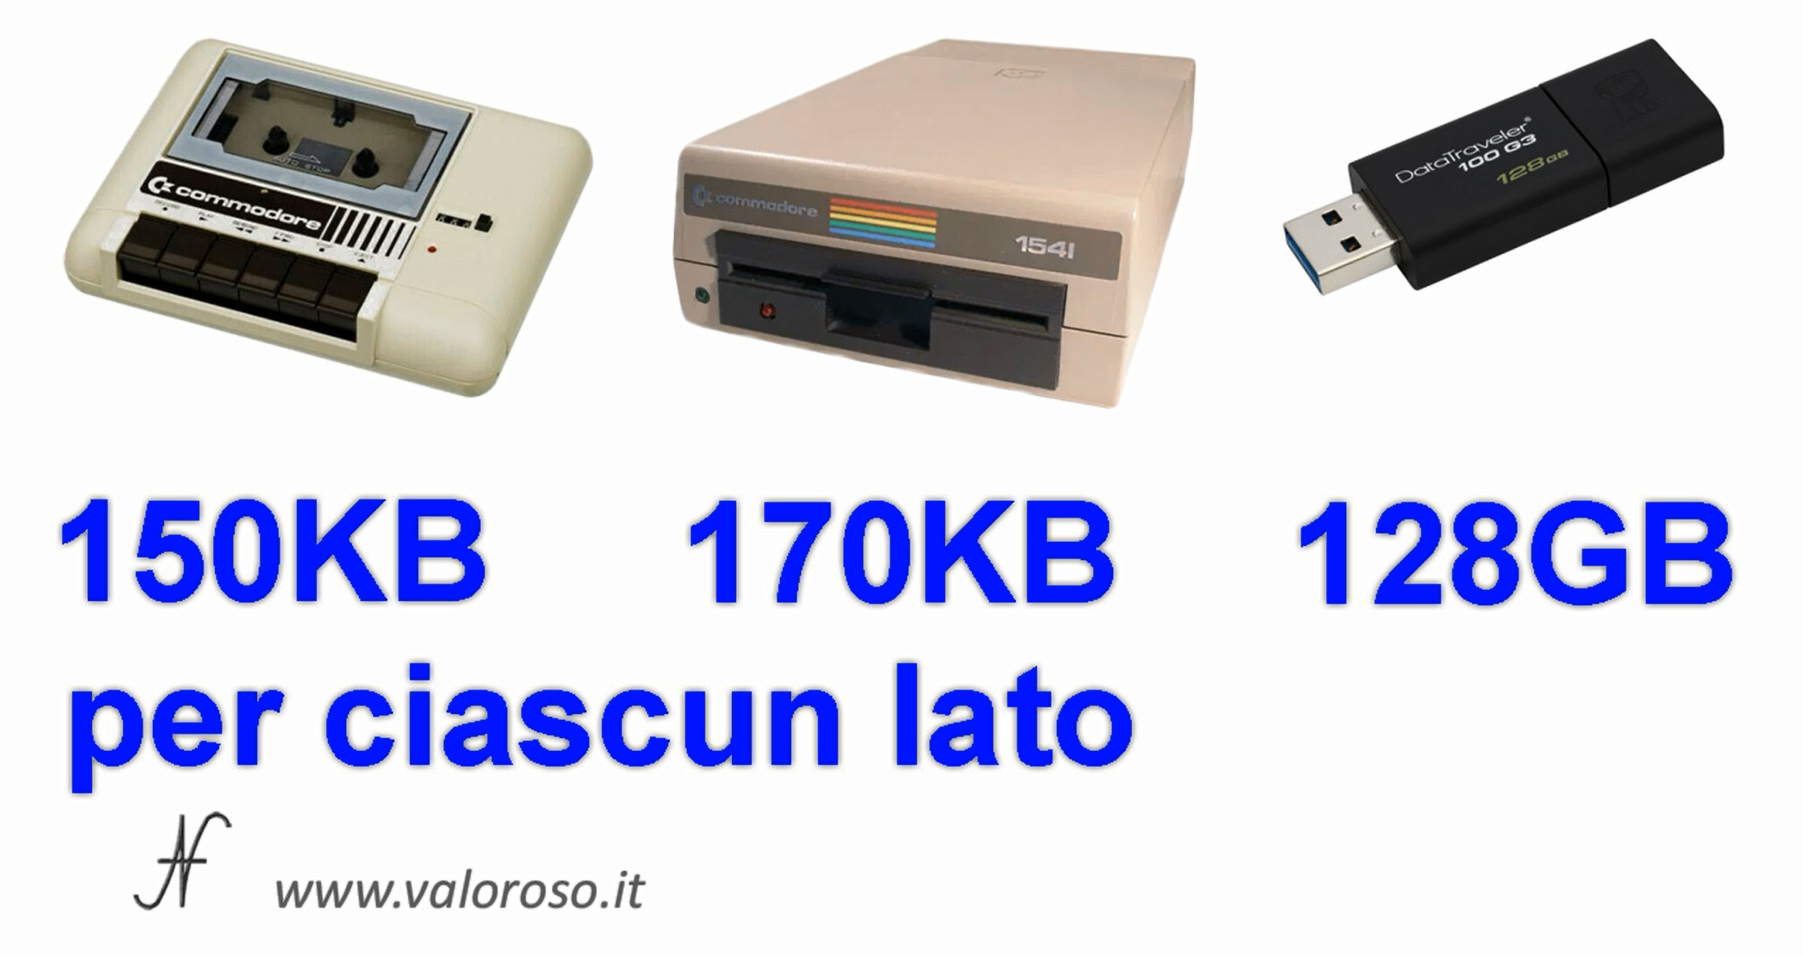 Commodore Vs PC moderno, confronto capacità, datassette, pendrive USB3, floppy disk drive 1541